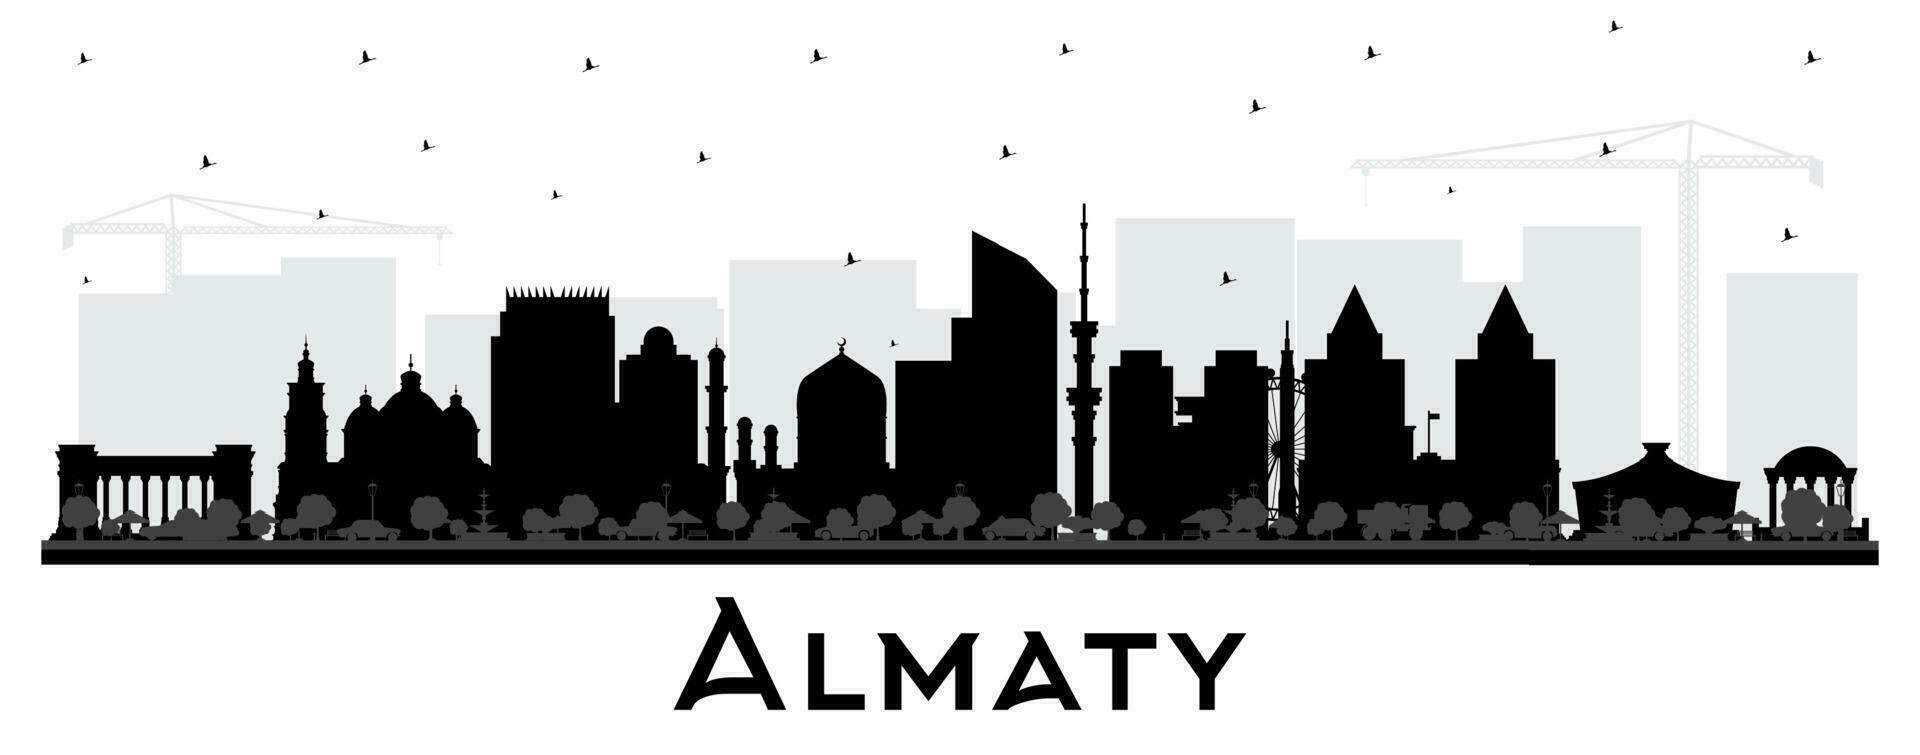 Almaty Kazachstan stad horizon silhouet met zwart gebouwen geïsoleerd Aan wit. vector illustratie. Almaty stadsgezicht met oriëntatiepunten.